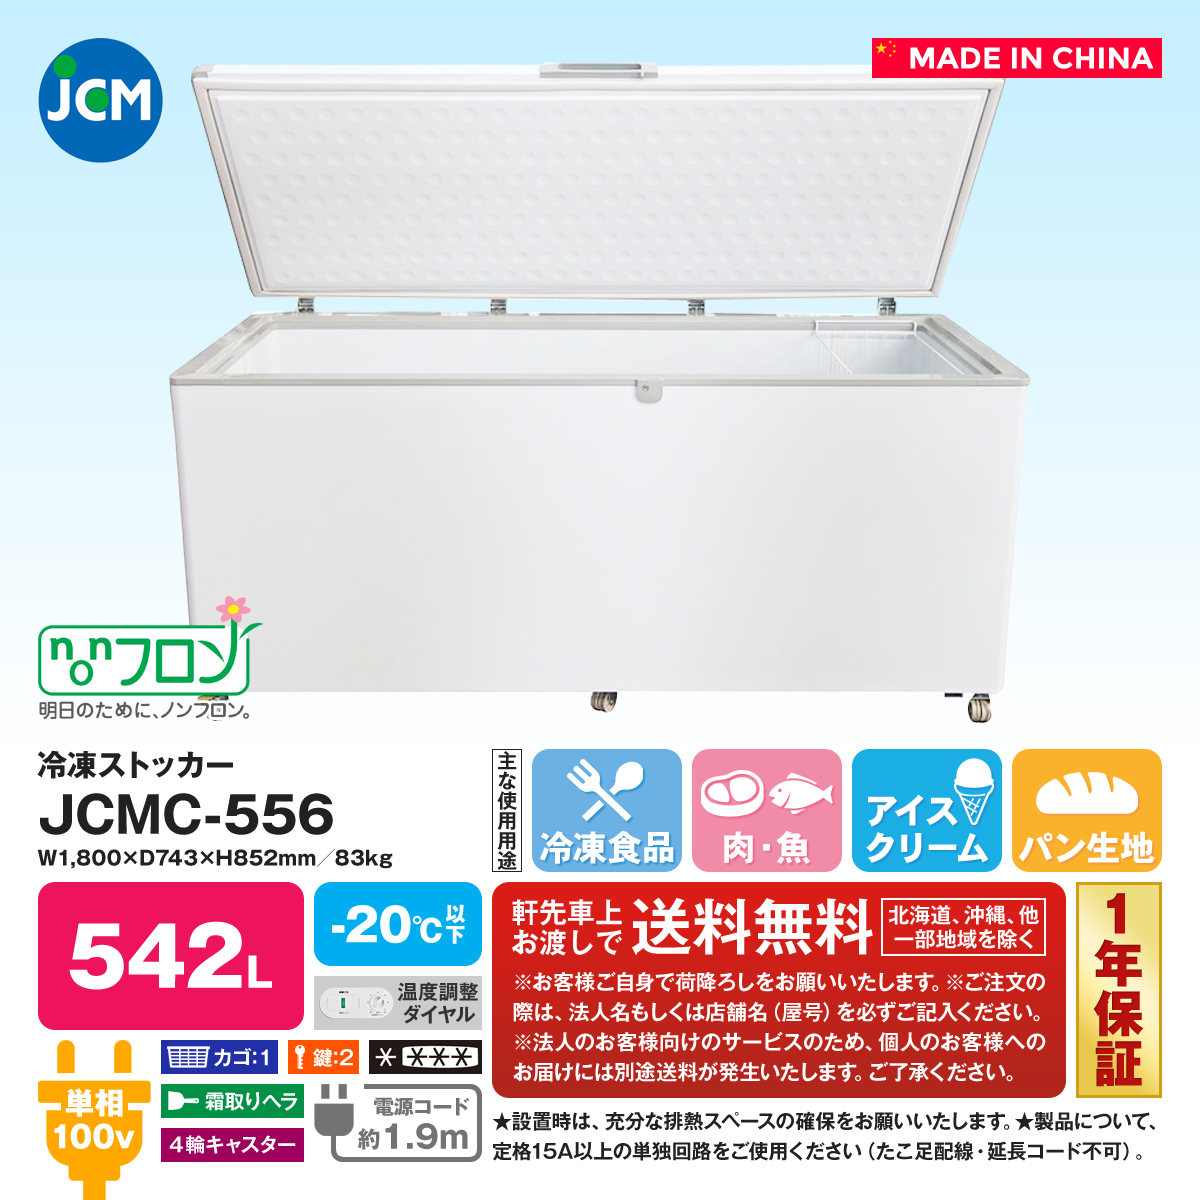 見事な 清風堂東京本店冷凍ストッカー JCMC-310